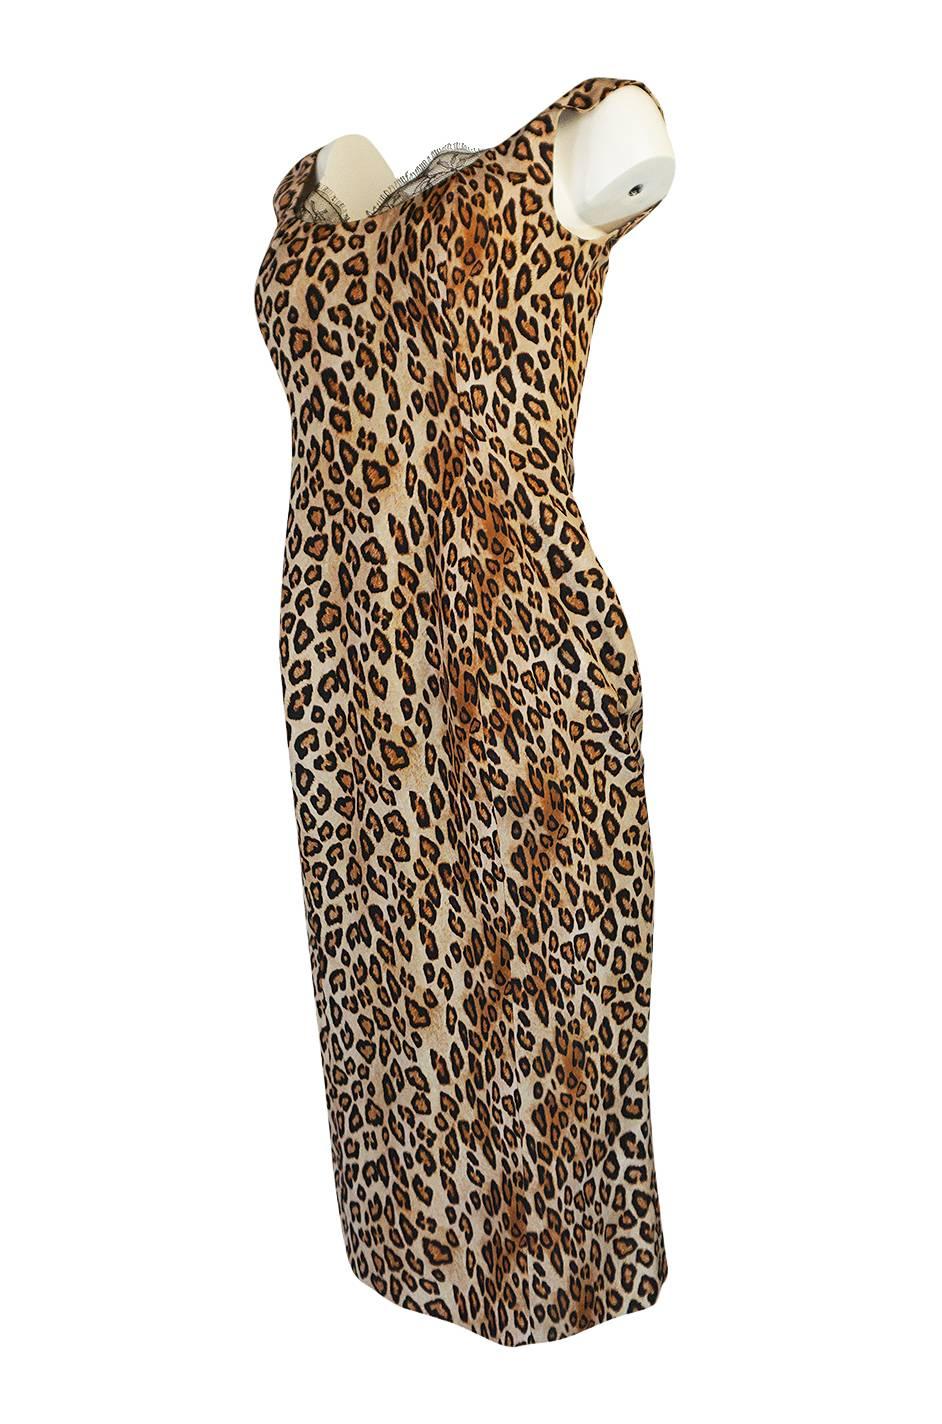 F/W 2005 Alexander McQueen Runway Leopard Print Dress In Excellent Condition In Rockwood, ON